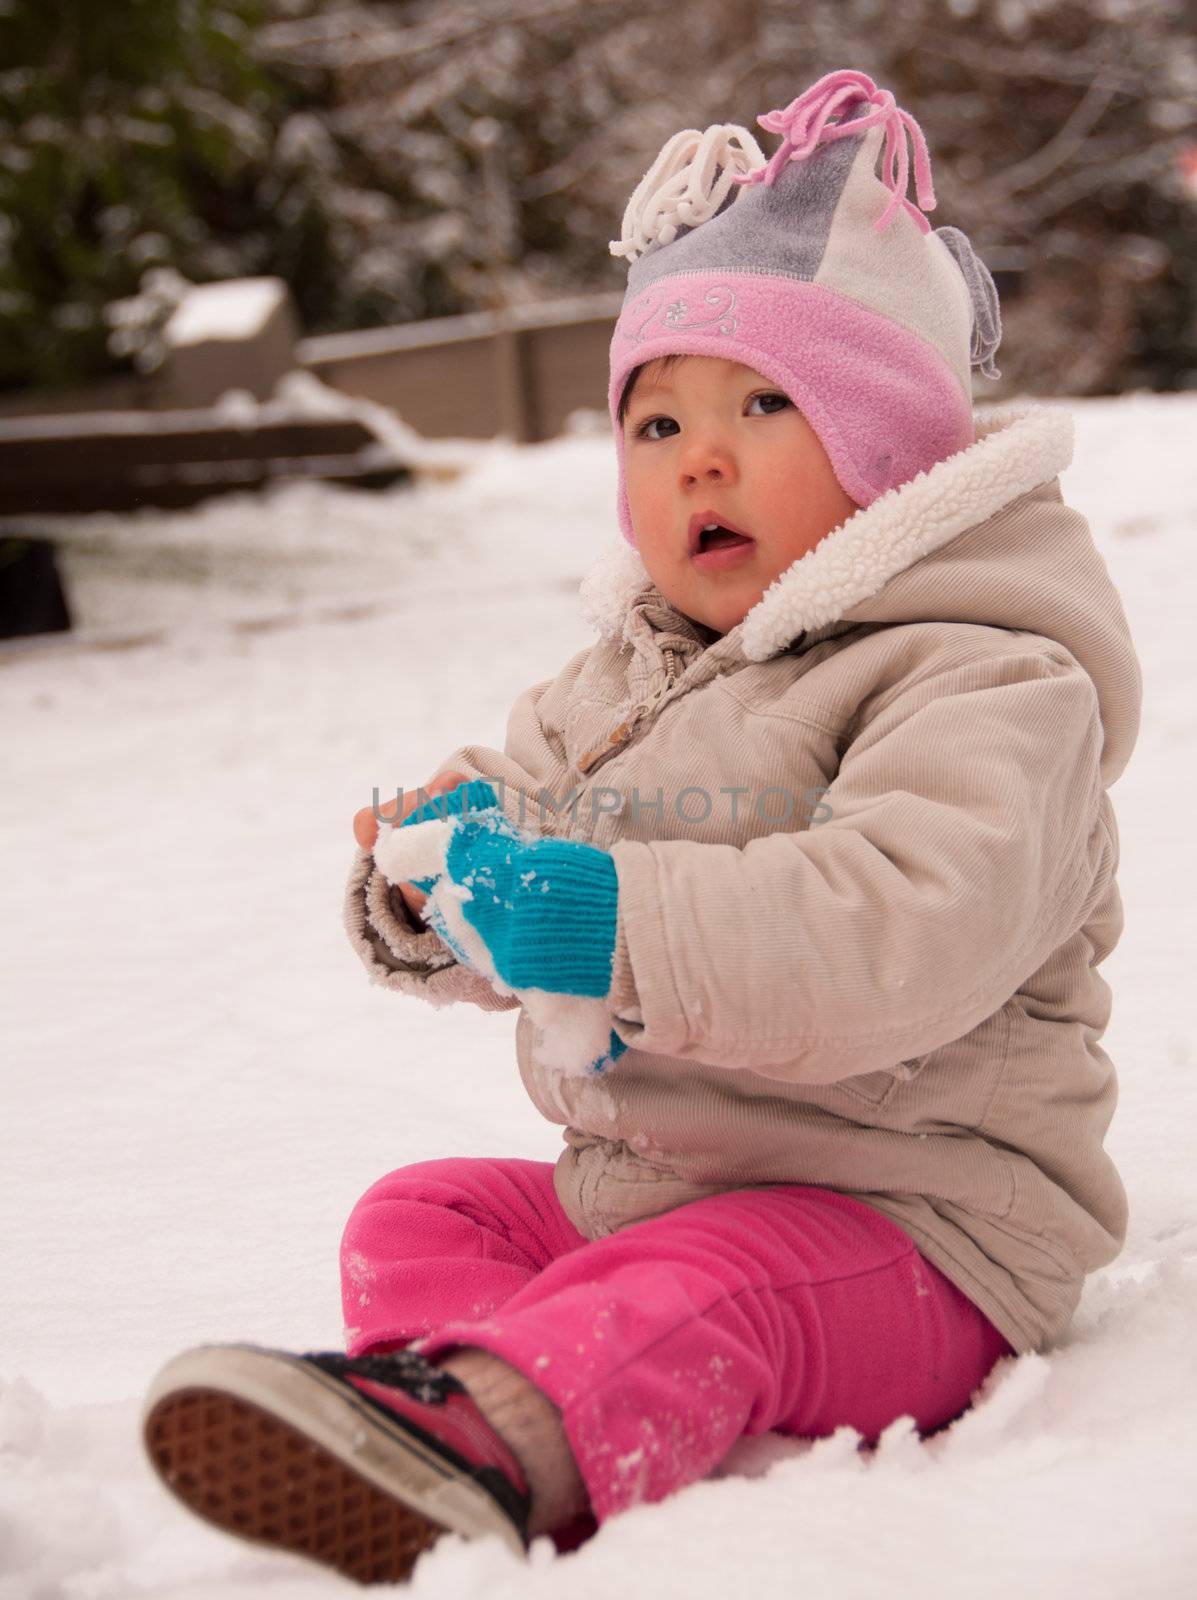 Toddler Sitting in Snow by JamesWheeler